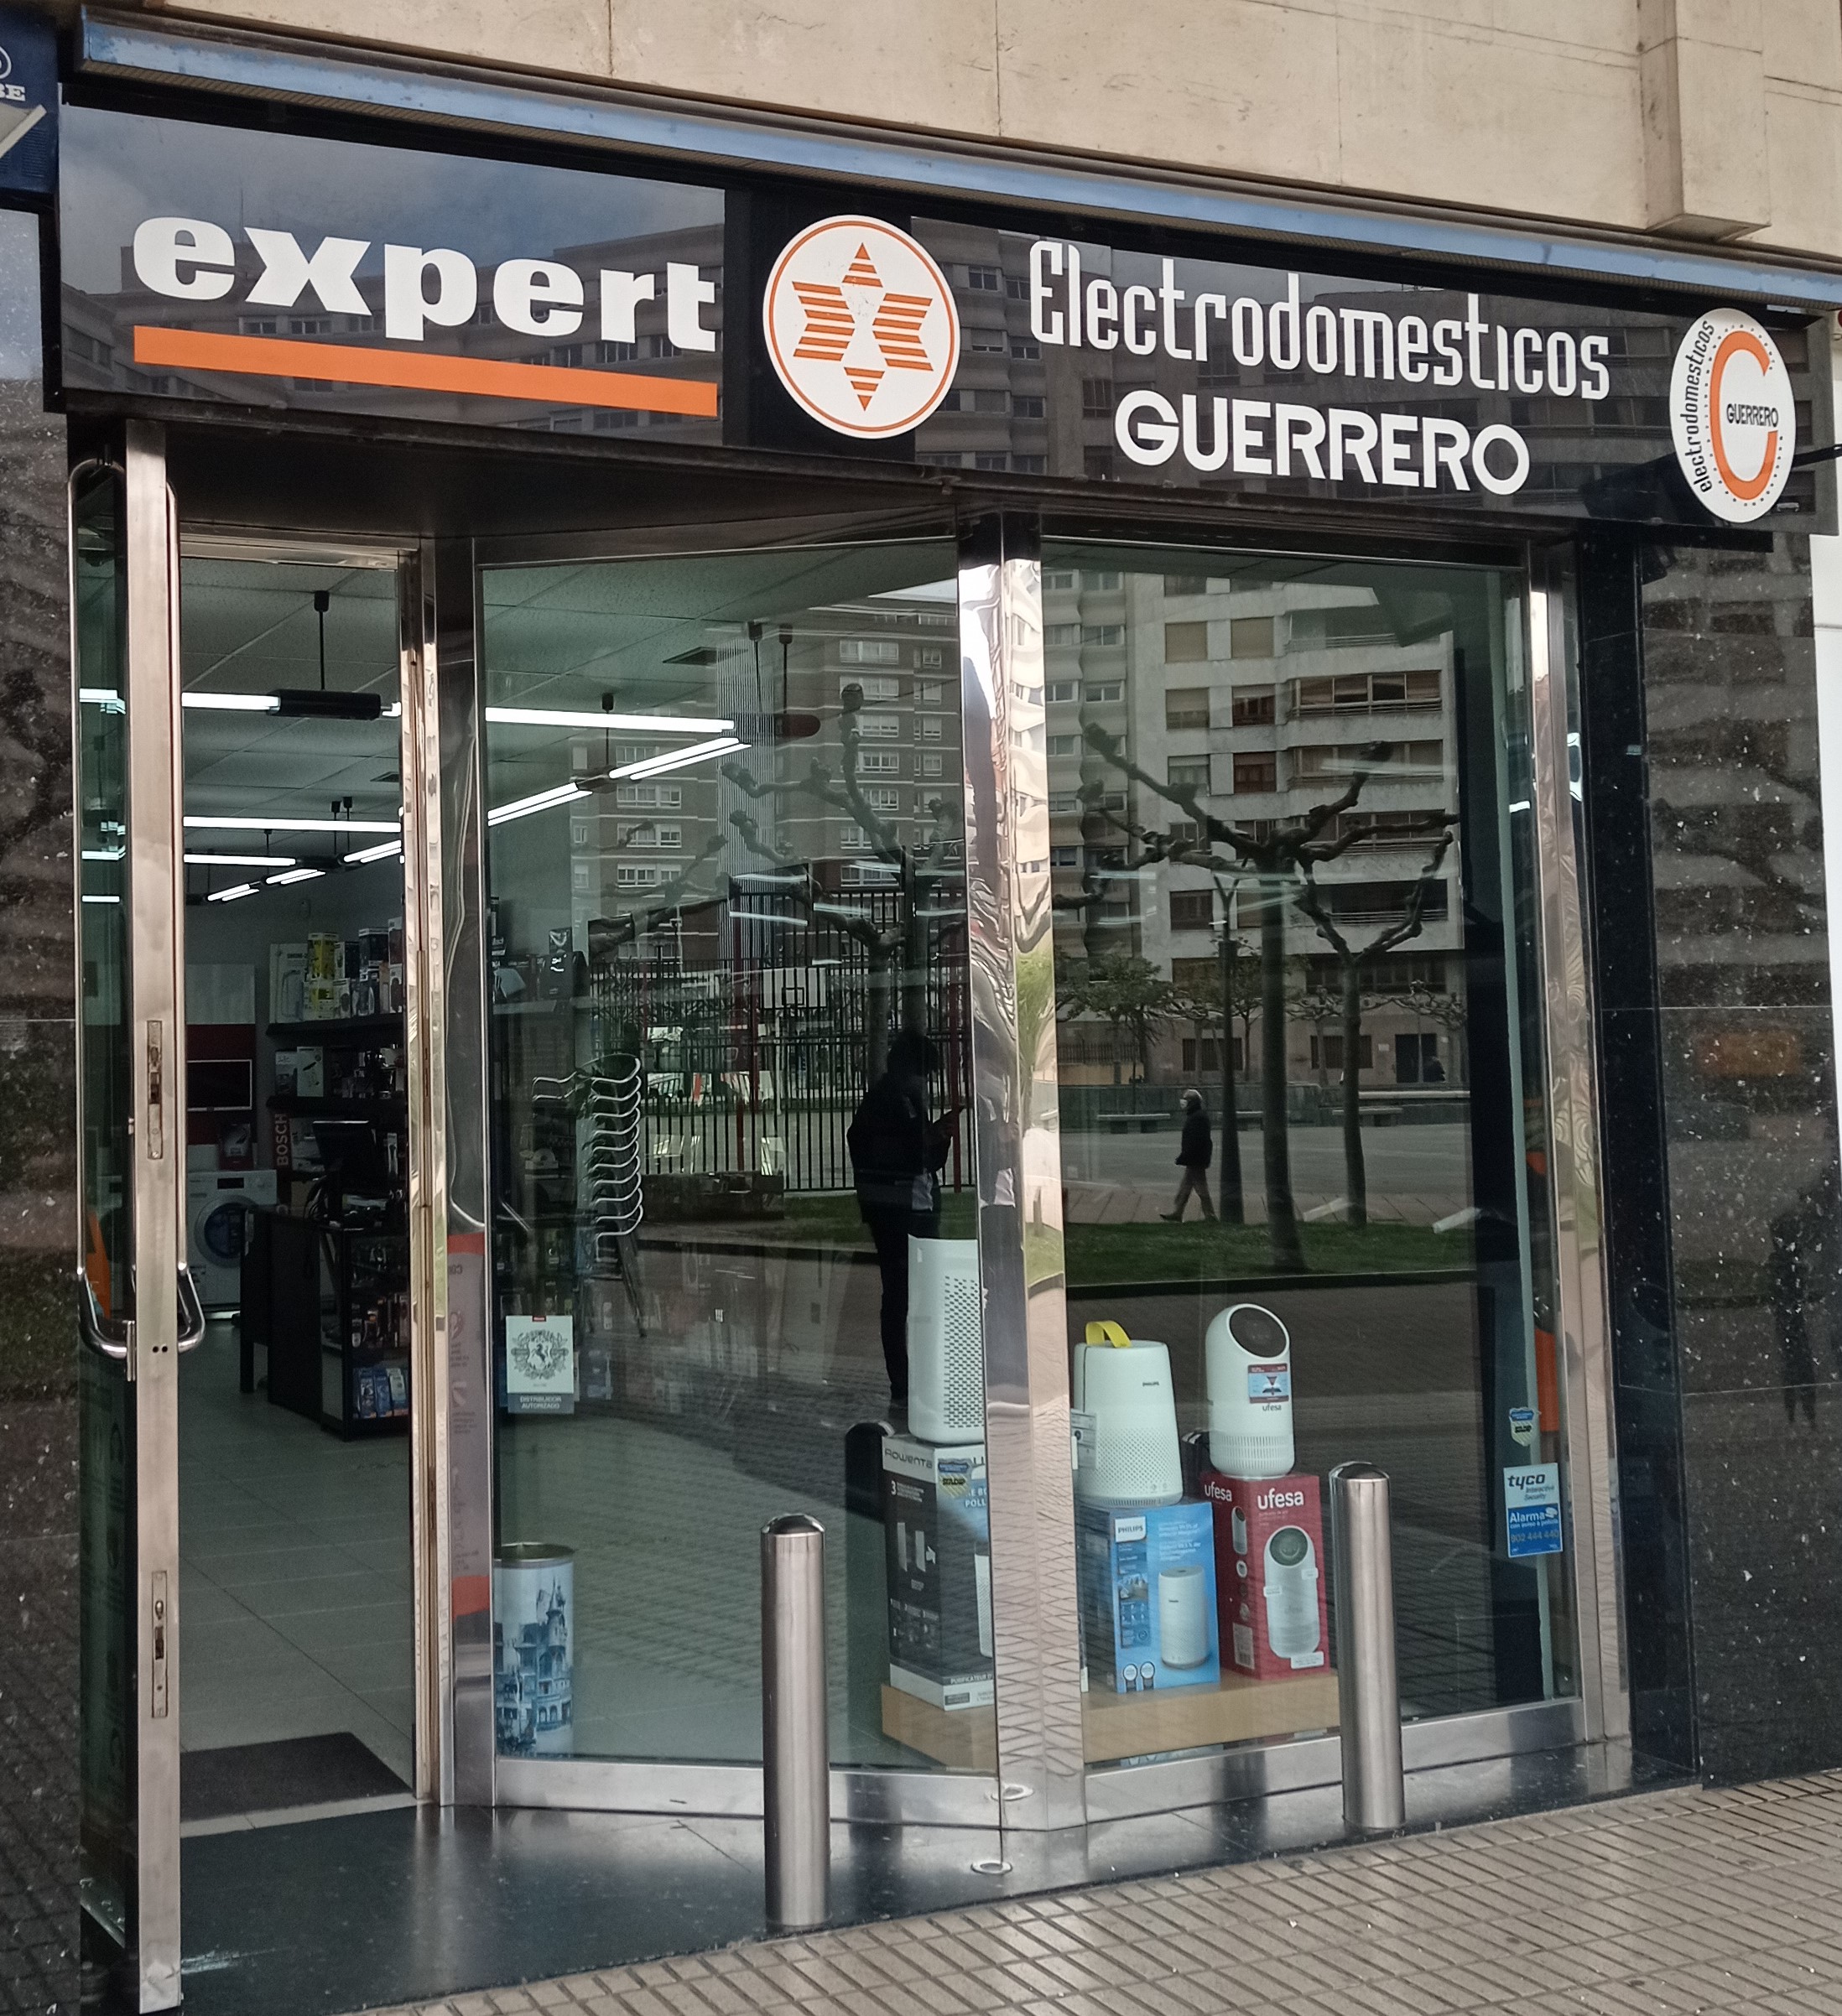 Expert Guerrero